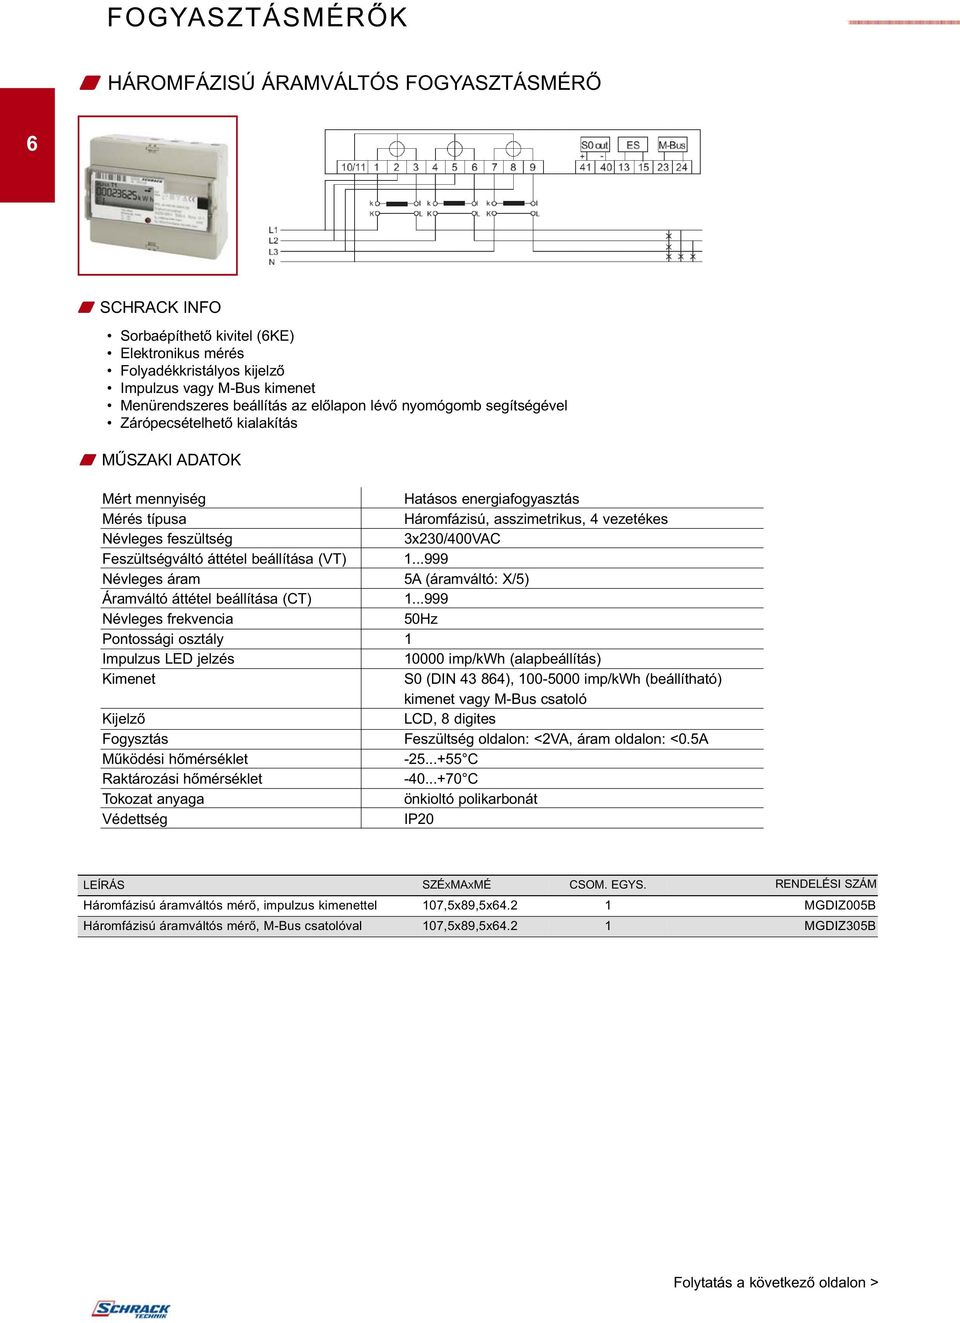 3x230/400VAC Feszültségváltó áttétel beállítása (VT) 1...999 Névleges áram 5A (áramváltó: X/5) Áramváltó áttétel beállítása (CT) 1.